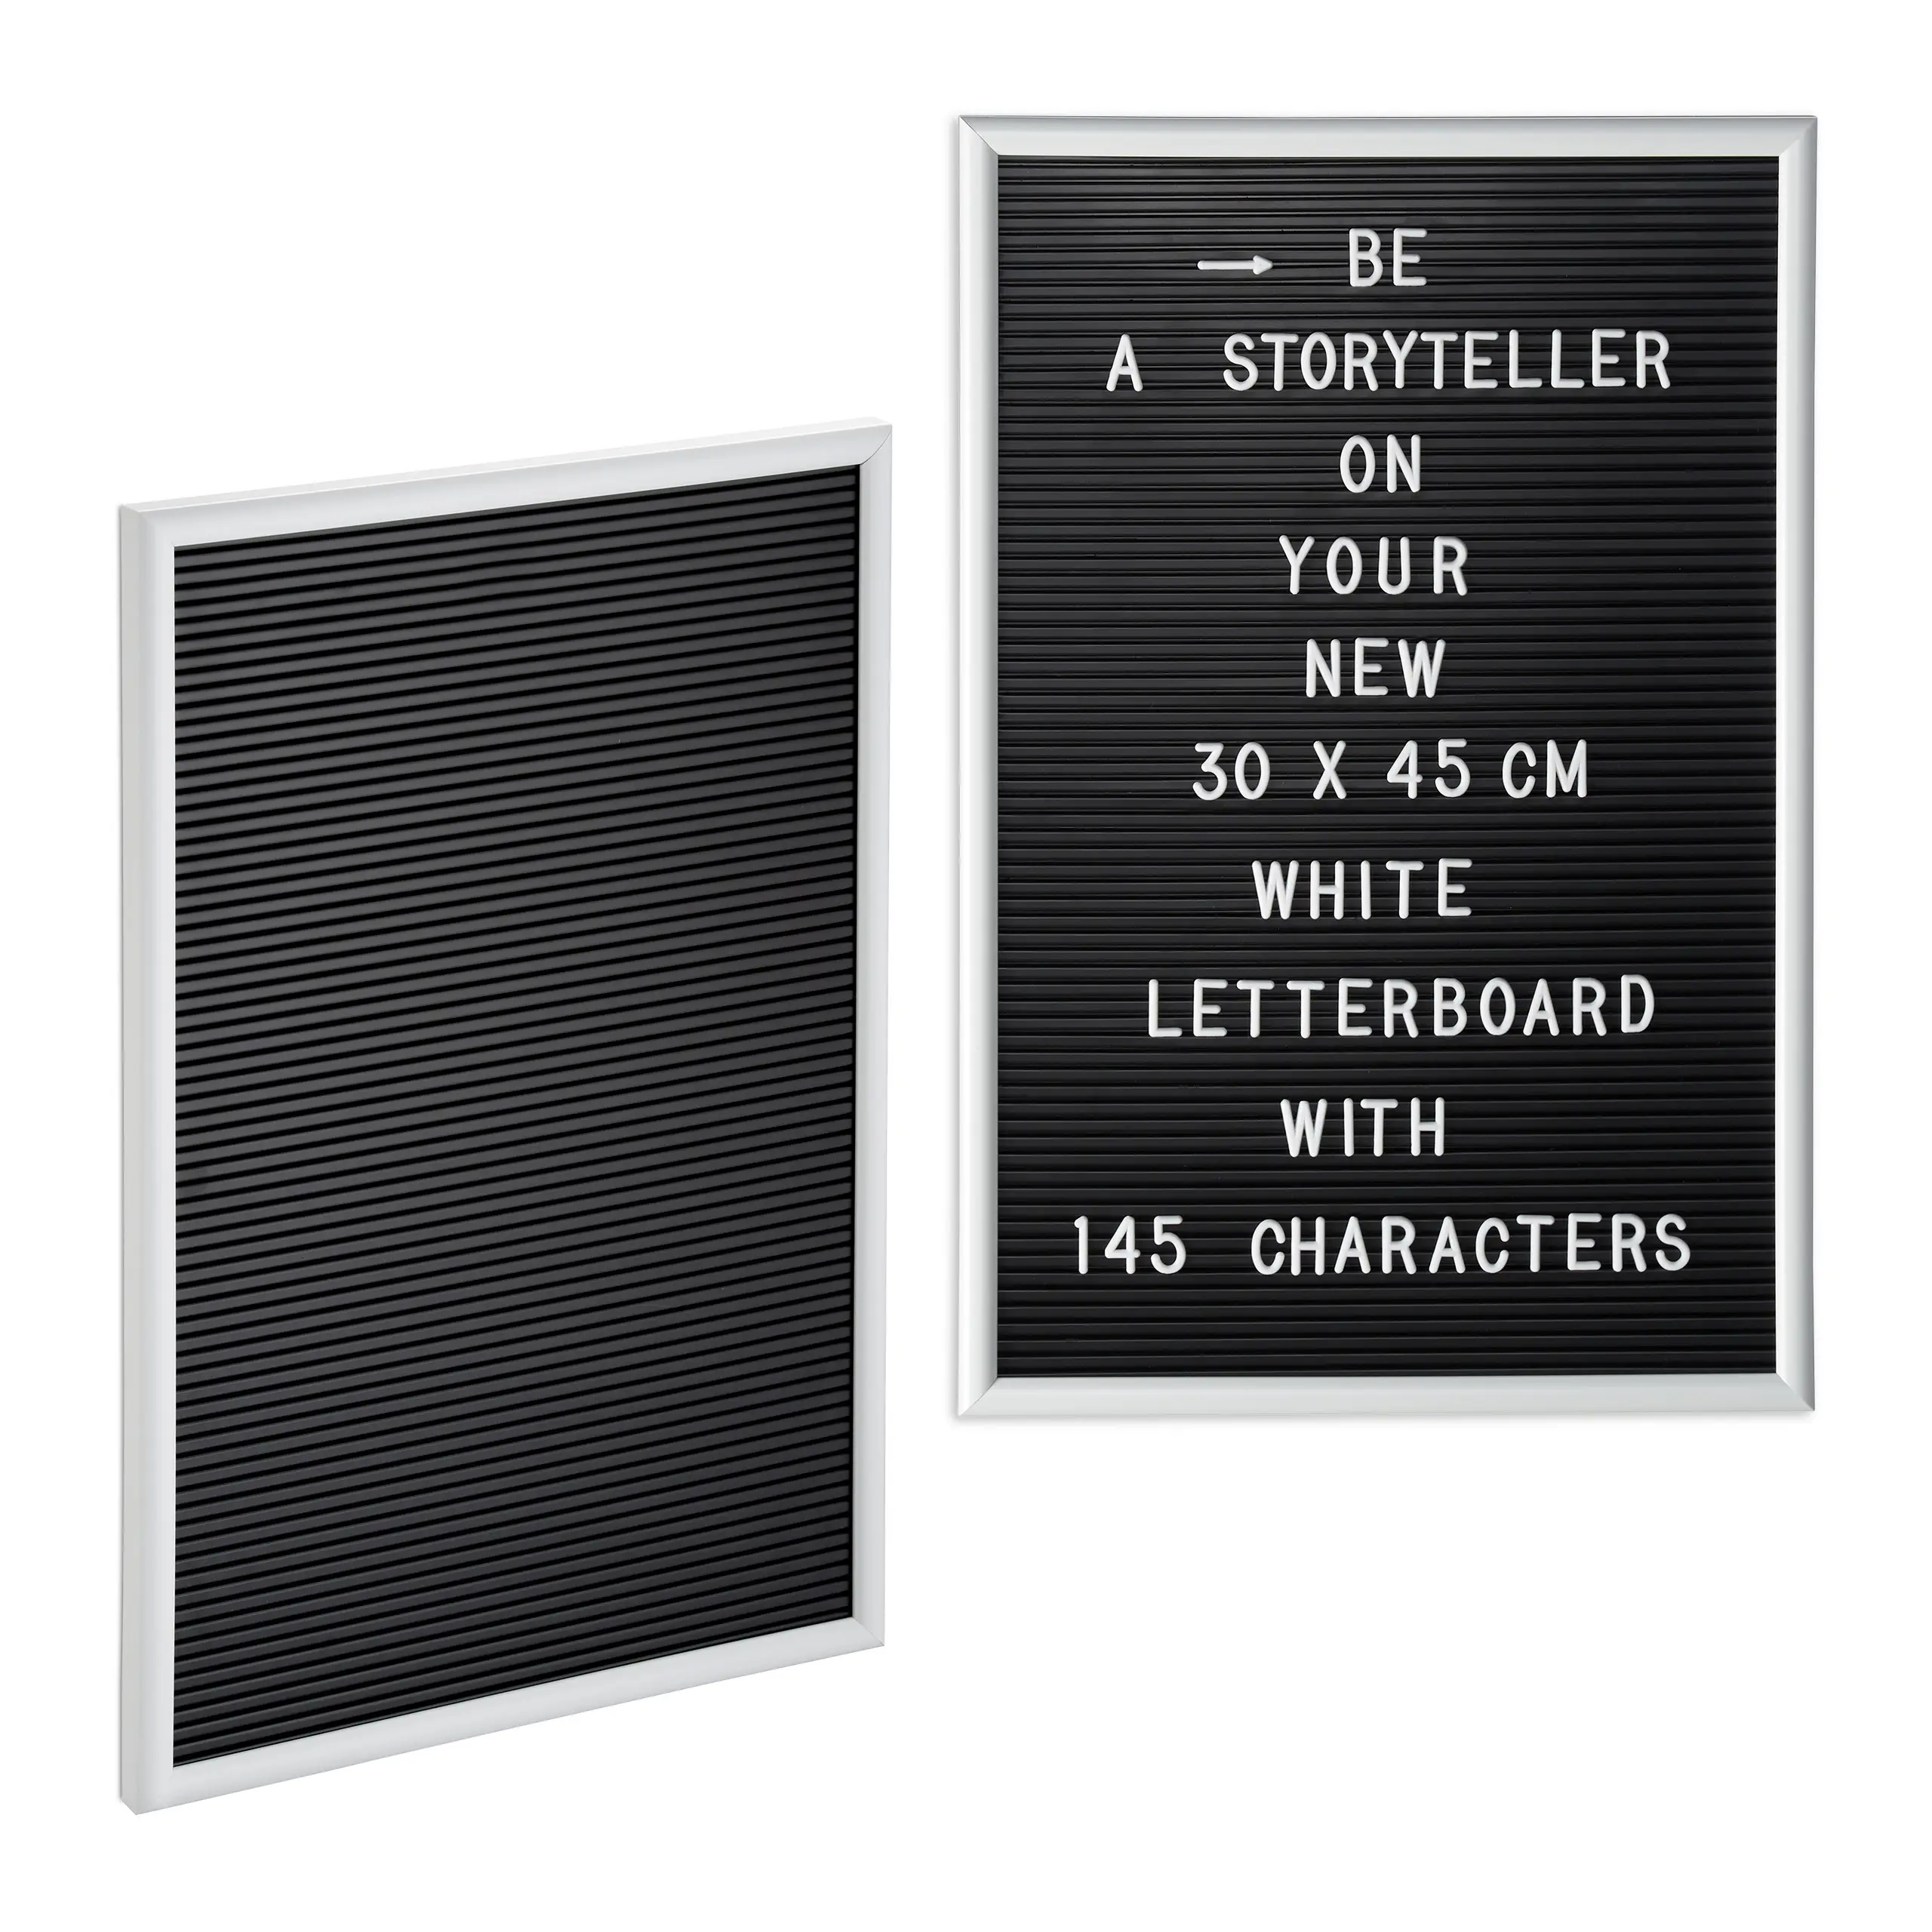 2 x Letterboard 30 x 45 cm wei脽